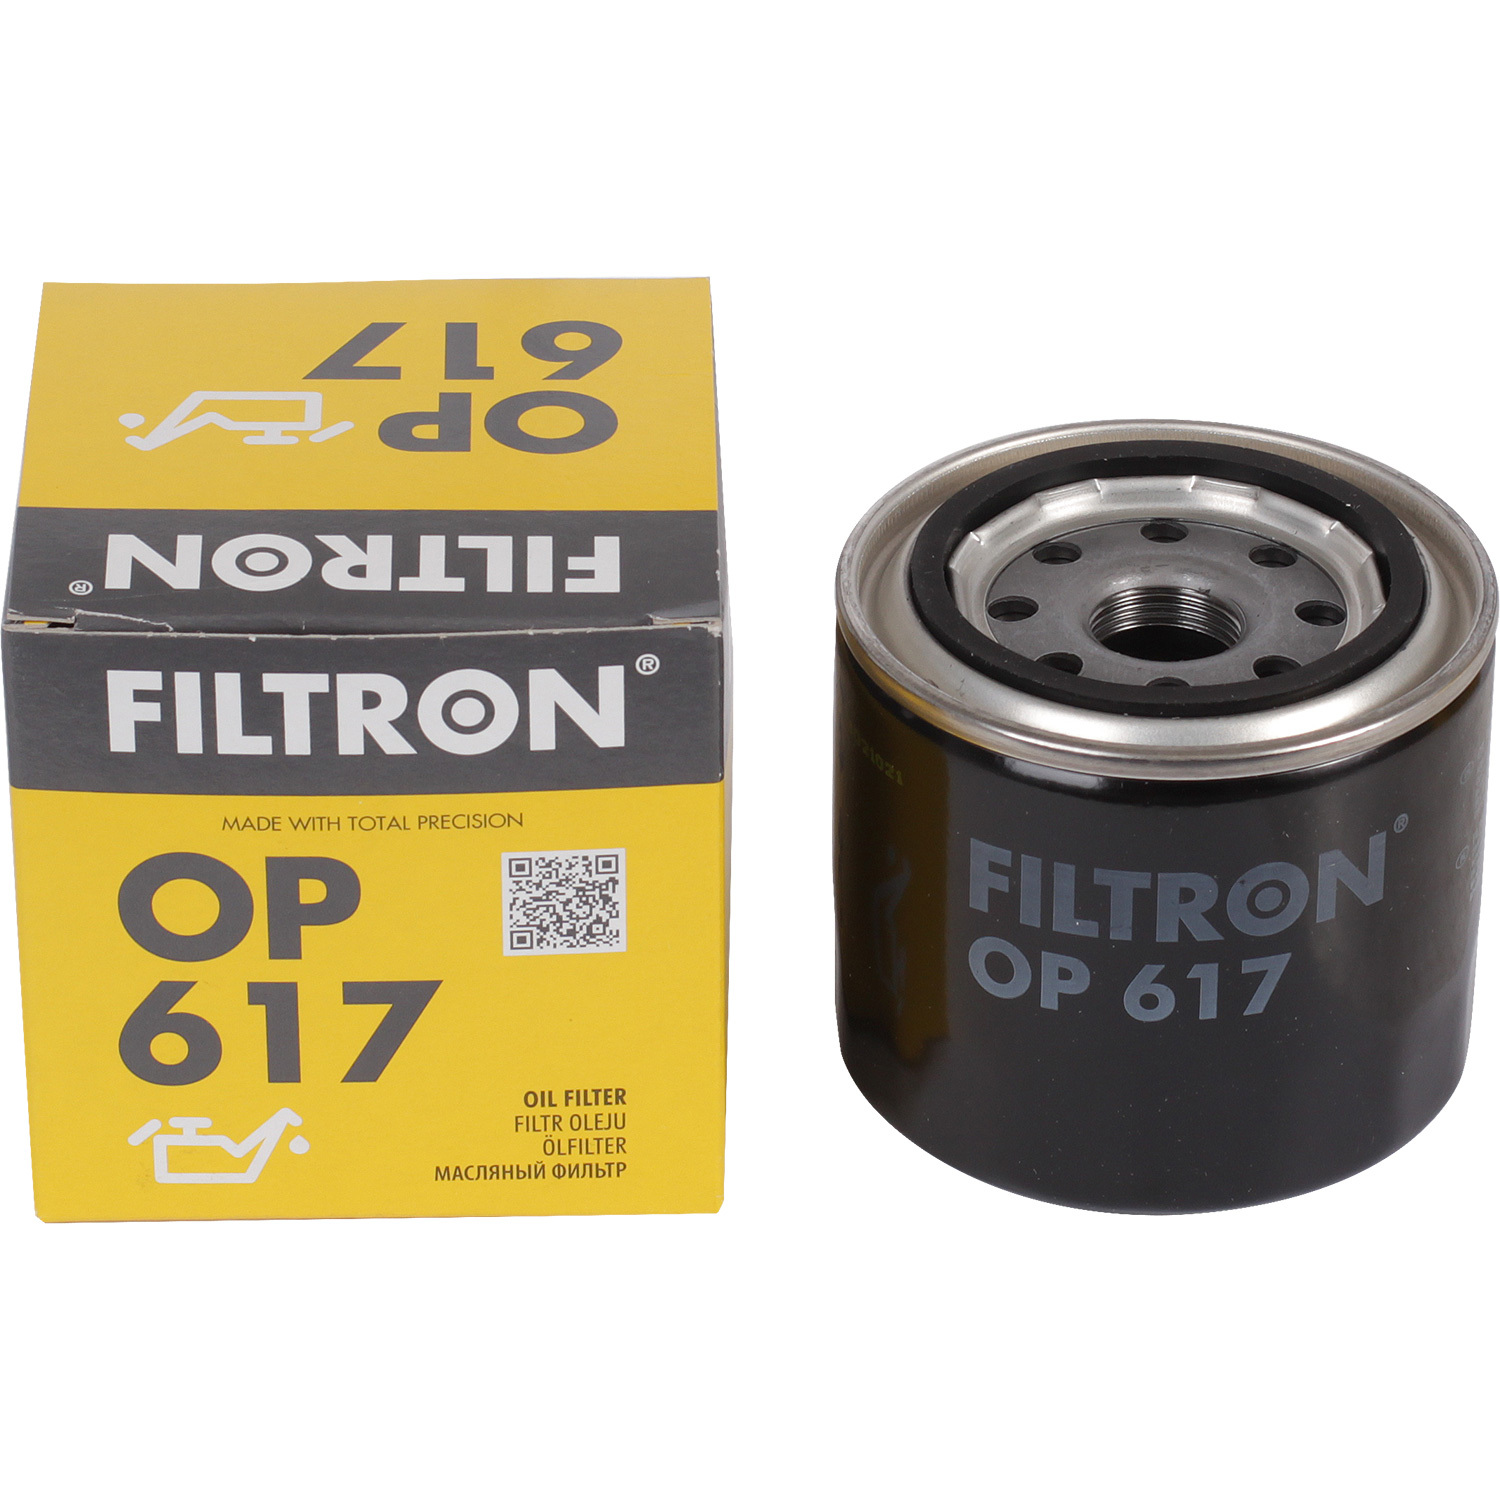 Фильтры Filtron Фильтр масляный Filtron OP617 фильтр масляный filtron oe 649 8